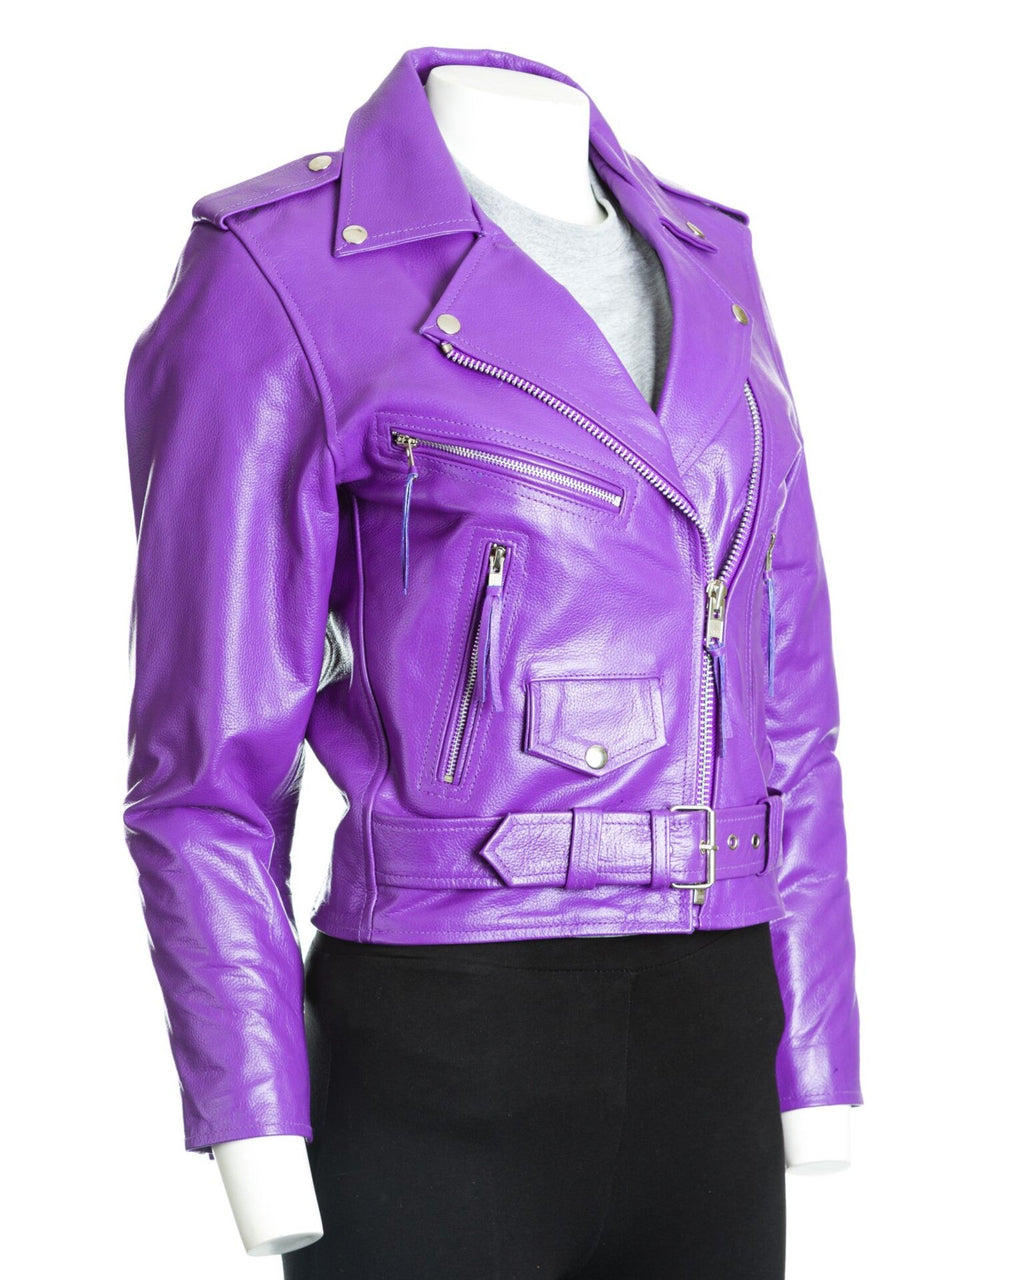 Women's Black Classic Brando Biker Style Cow Hide Leather Jacket: Gemma